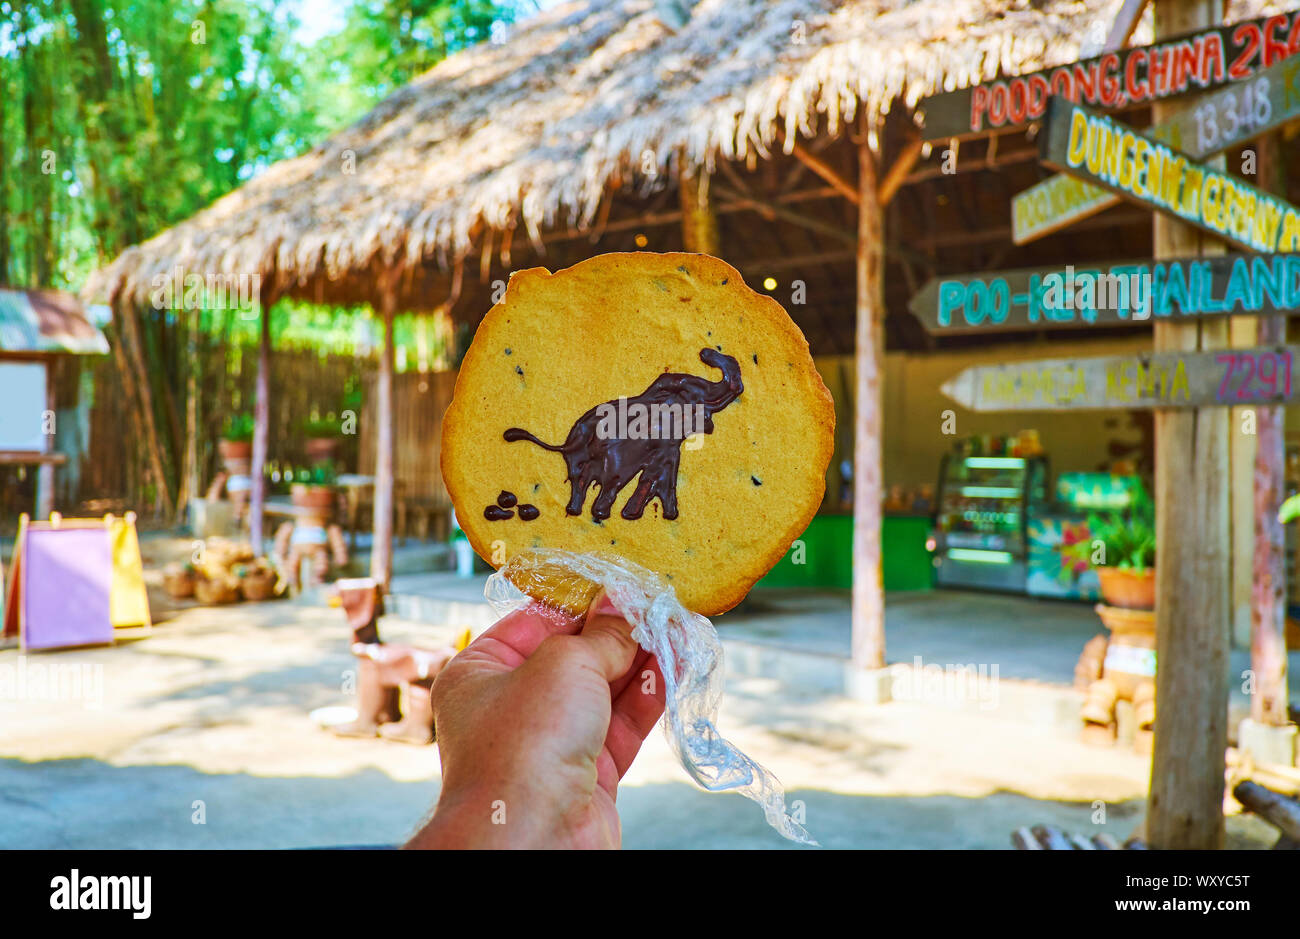 Disfrute de las sabrosas galletas con chispas de chocolate artesanal los elefantes en la cafetería al aire libre del parque Poopoopaper, Chiang Mai, Tailandia Foto de stock